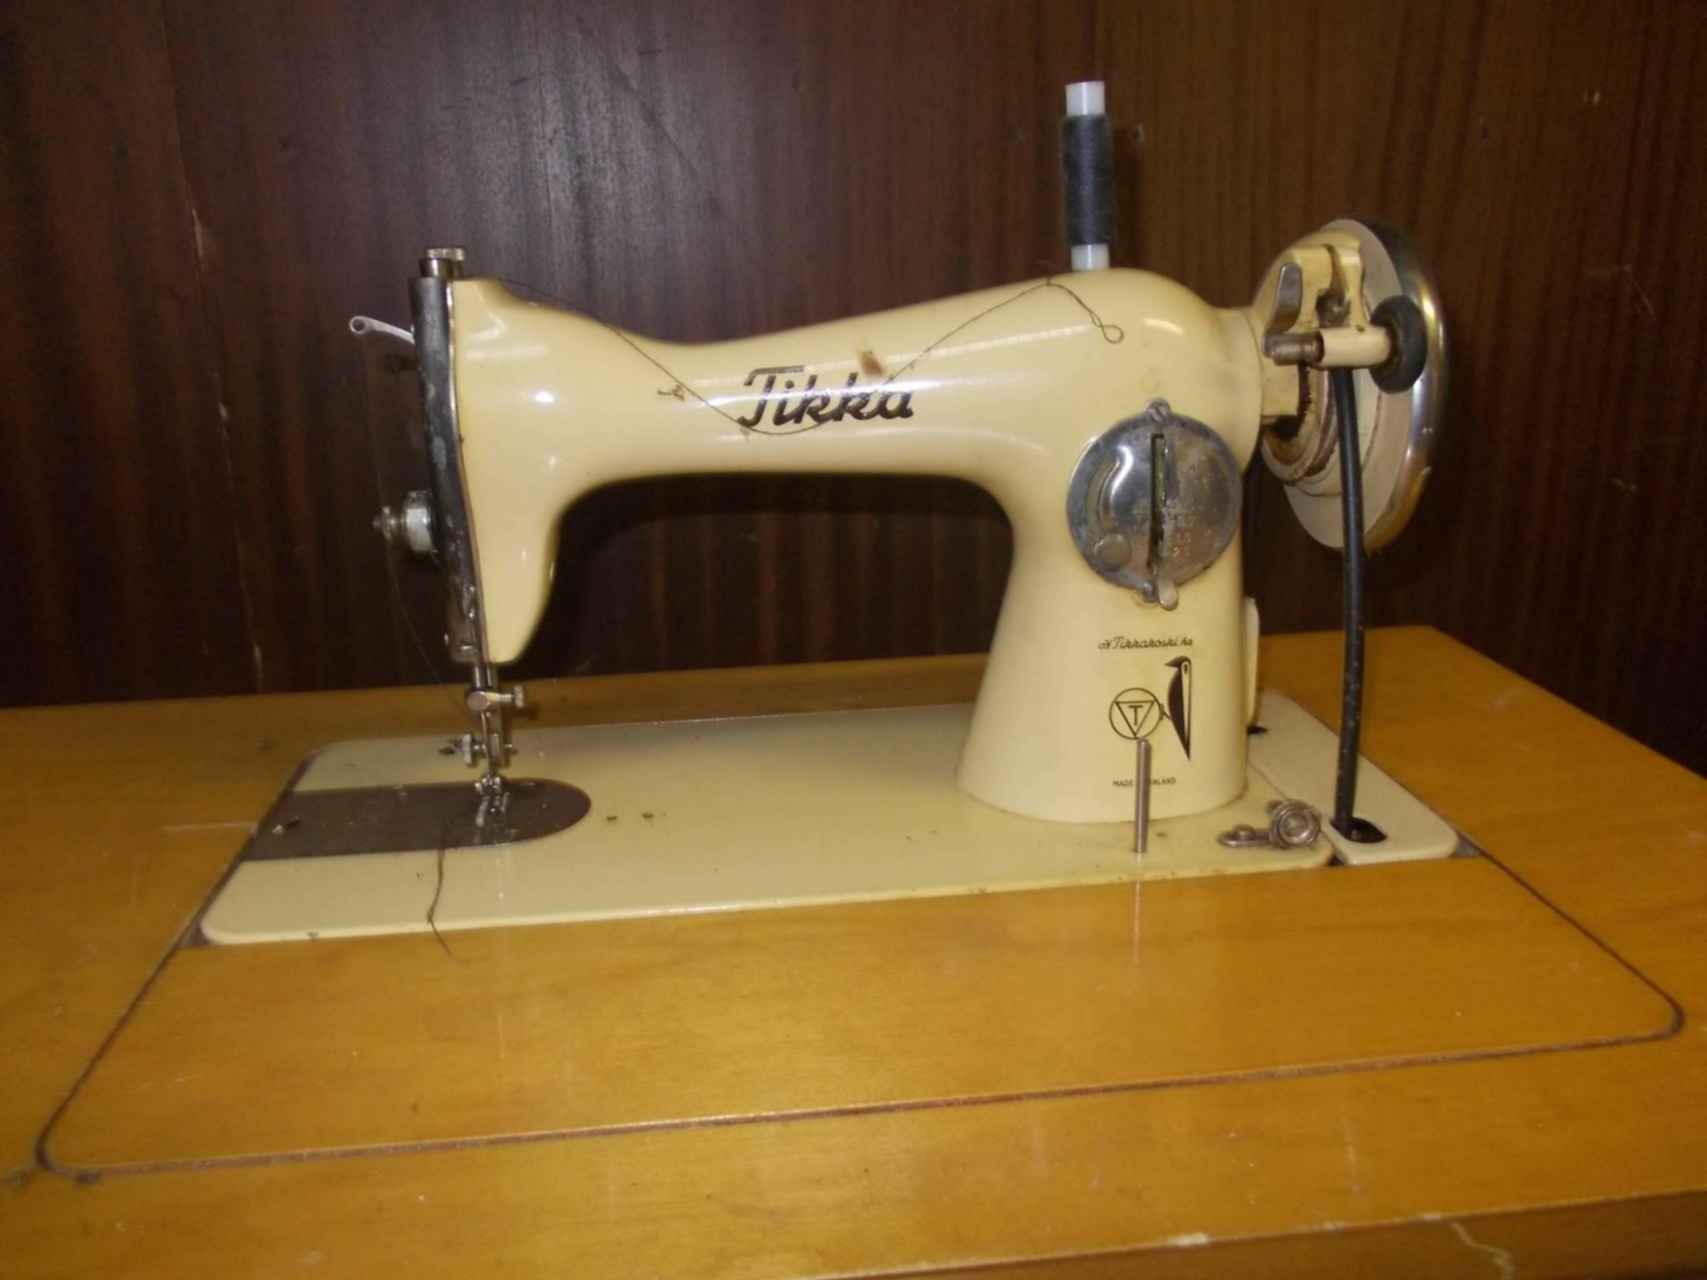 Купить продать швейную машинку. Тикка 45 швейная машинка. Швейная машинка тикка ножная. Швейная машинка Финляндия Tikka. Швейная машинка финская ножная тикка.